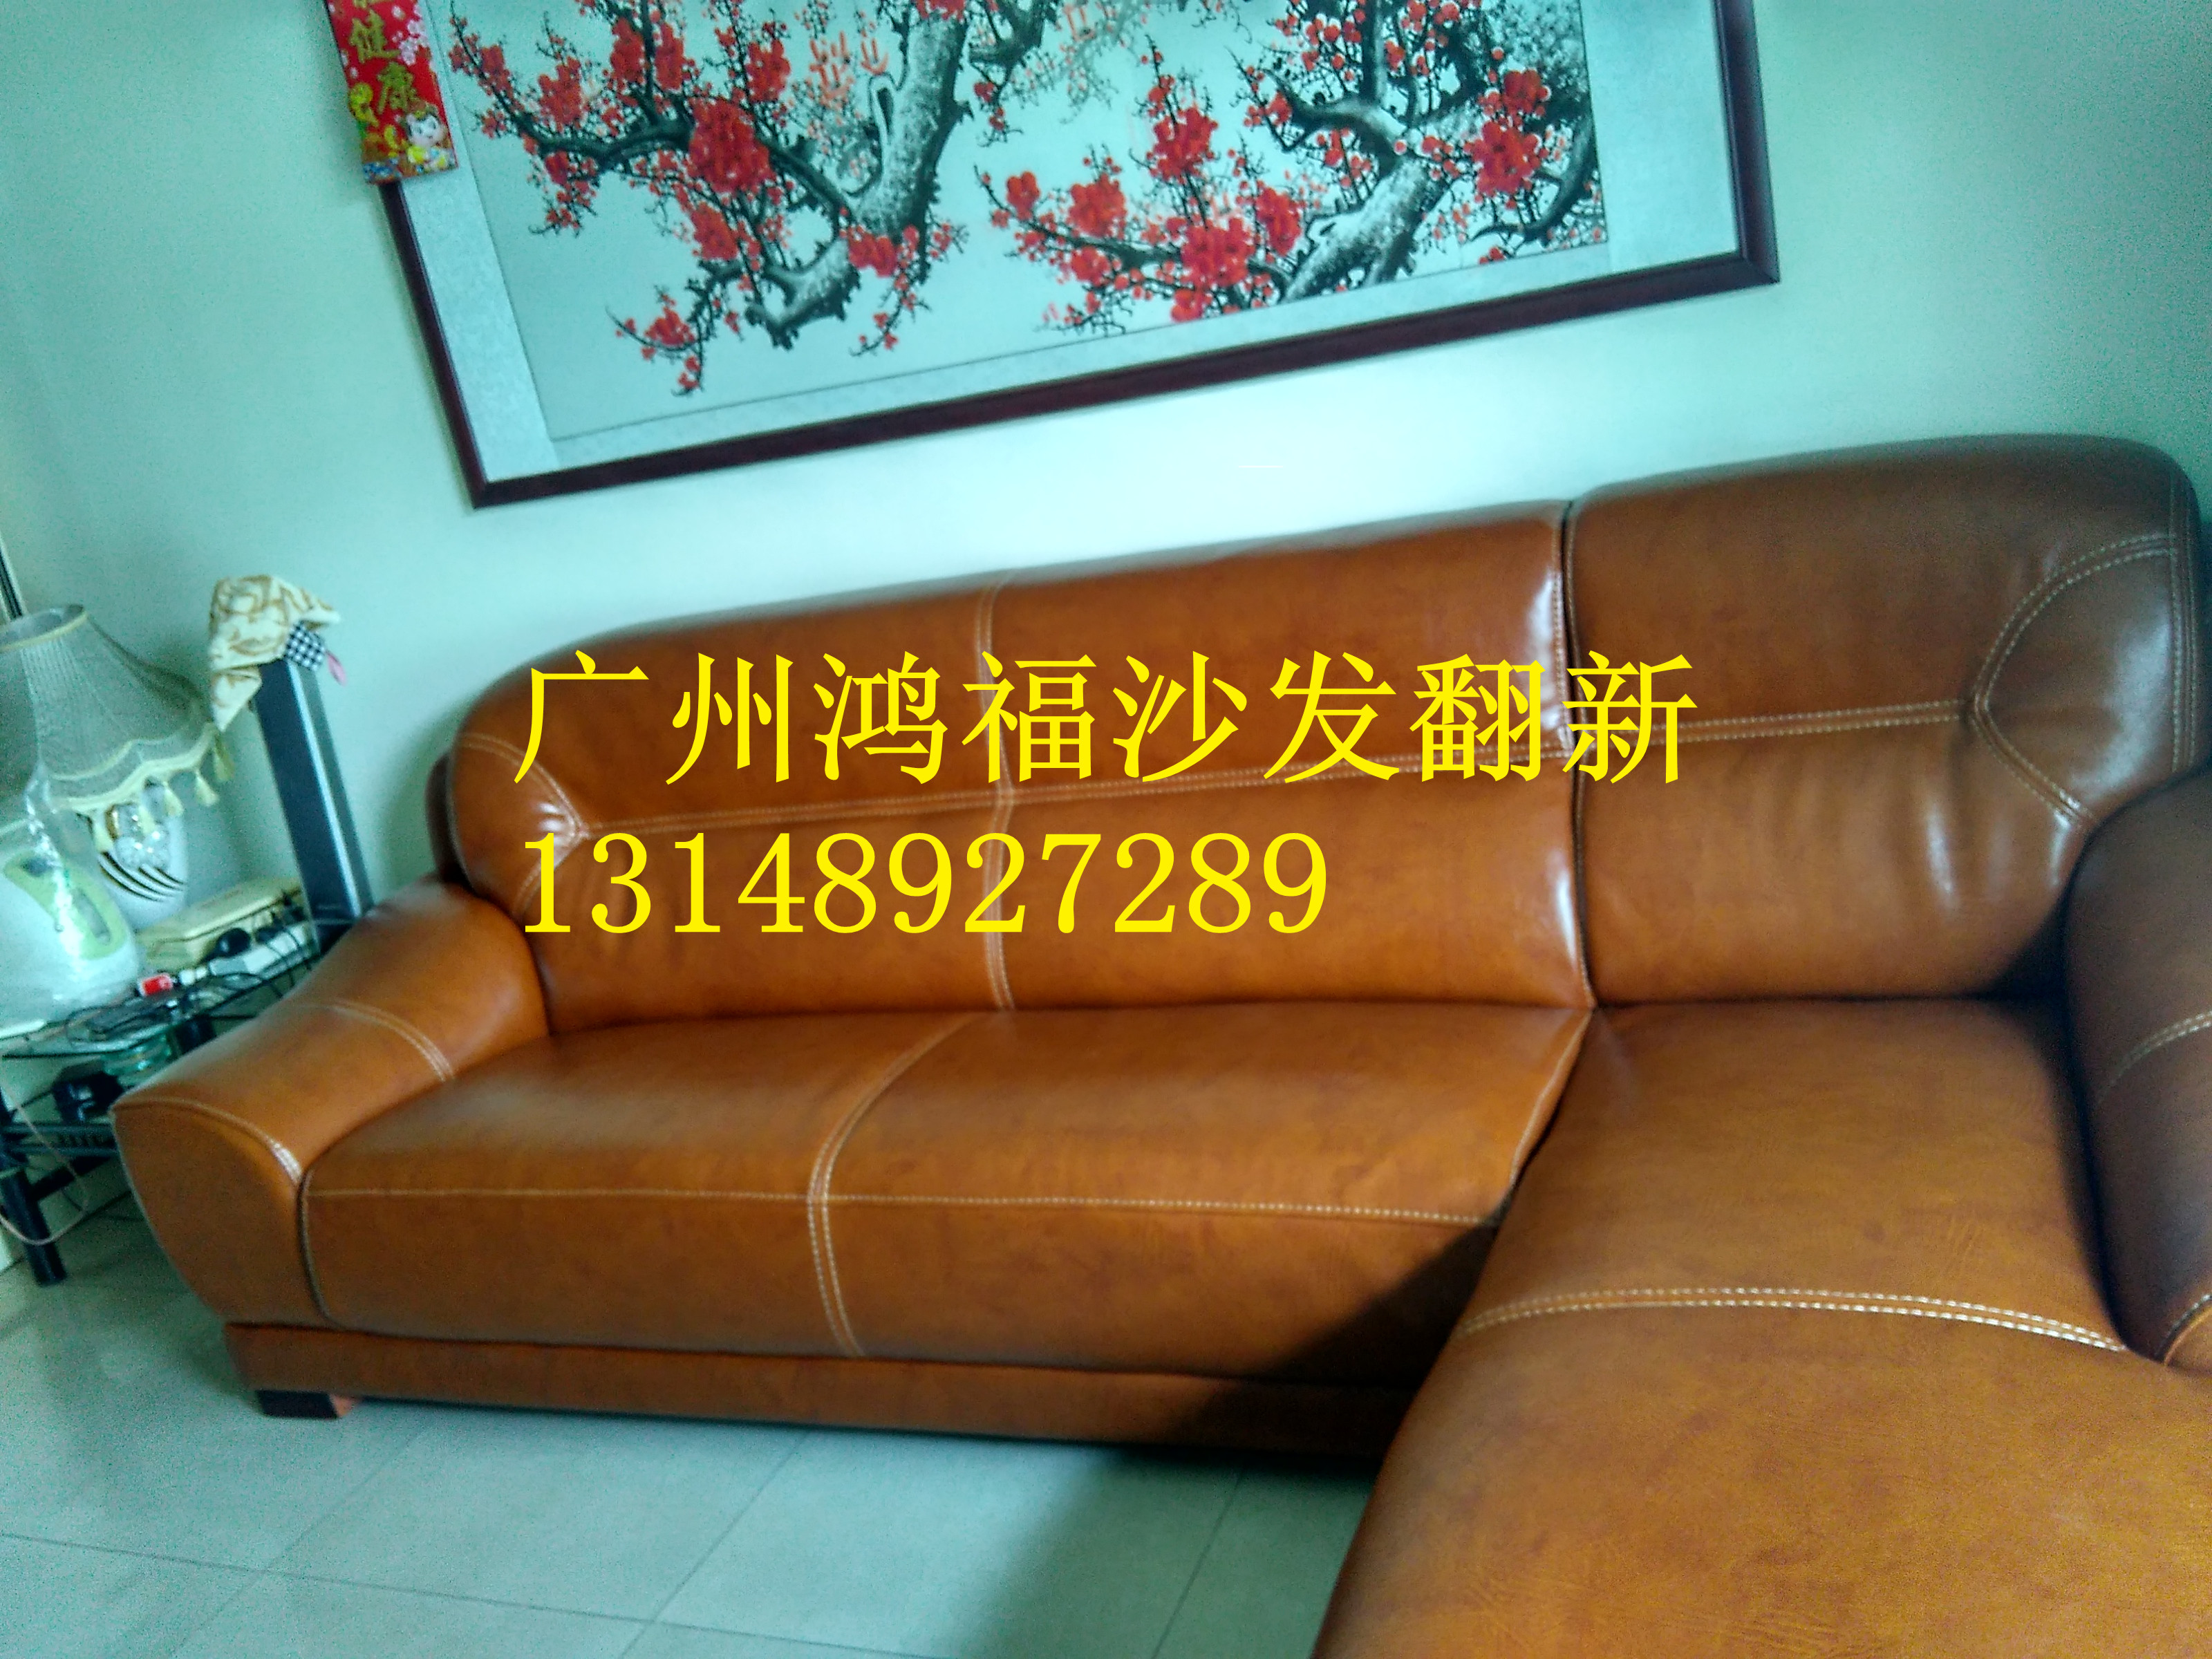 广州市广州番禺区专业沙发翻新清洁厂家